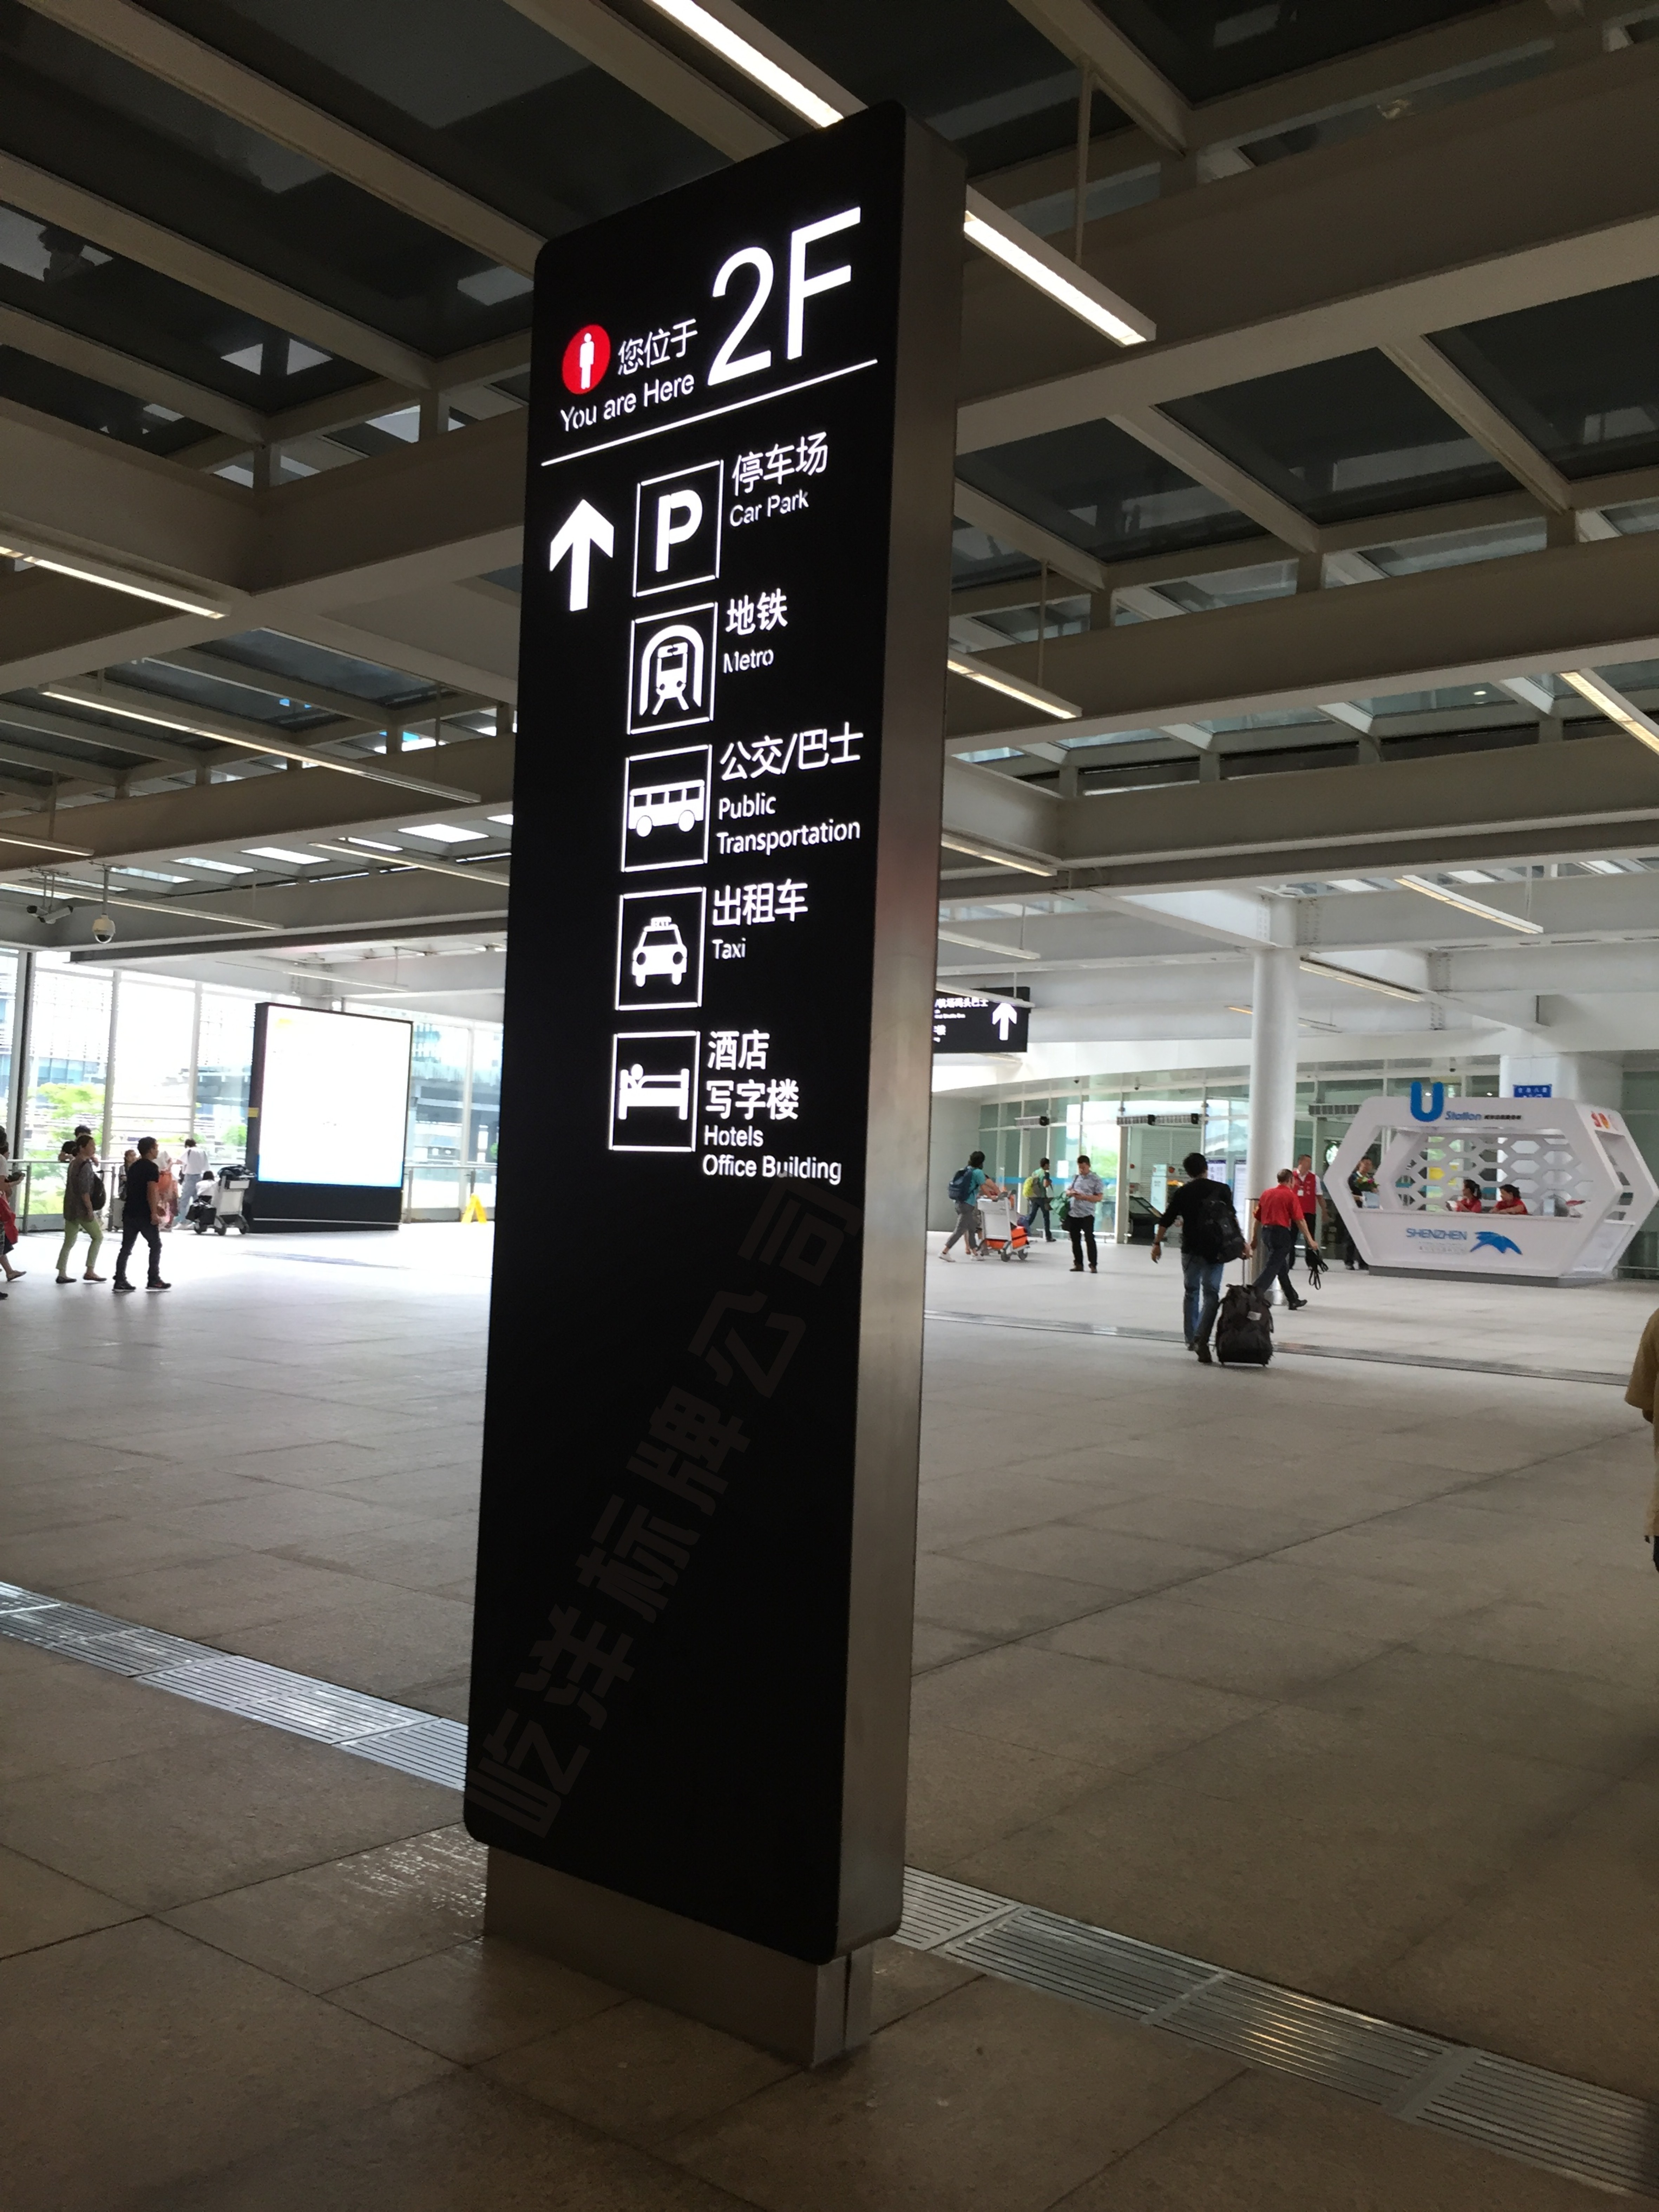 深圳宝安国际机场标识牌展示  深圳宝安国际机场标识牌展示图片